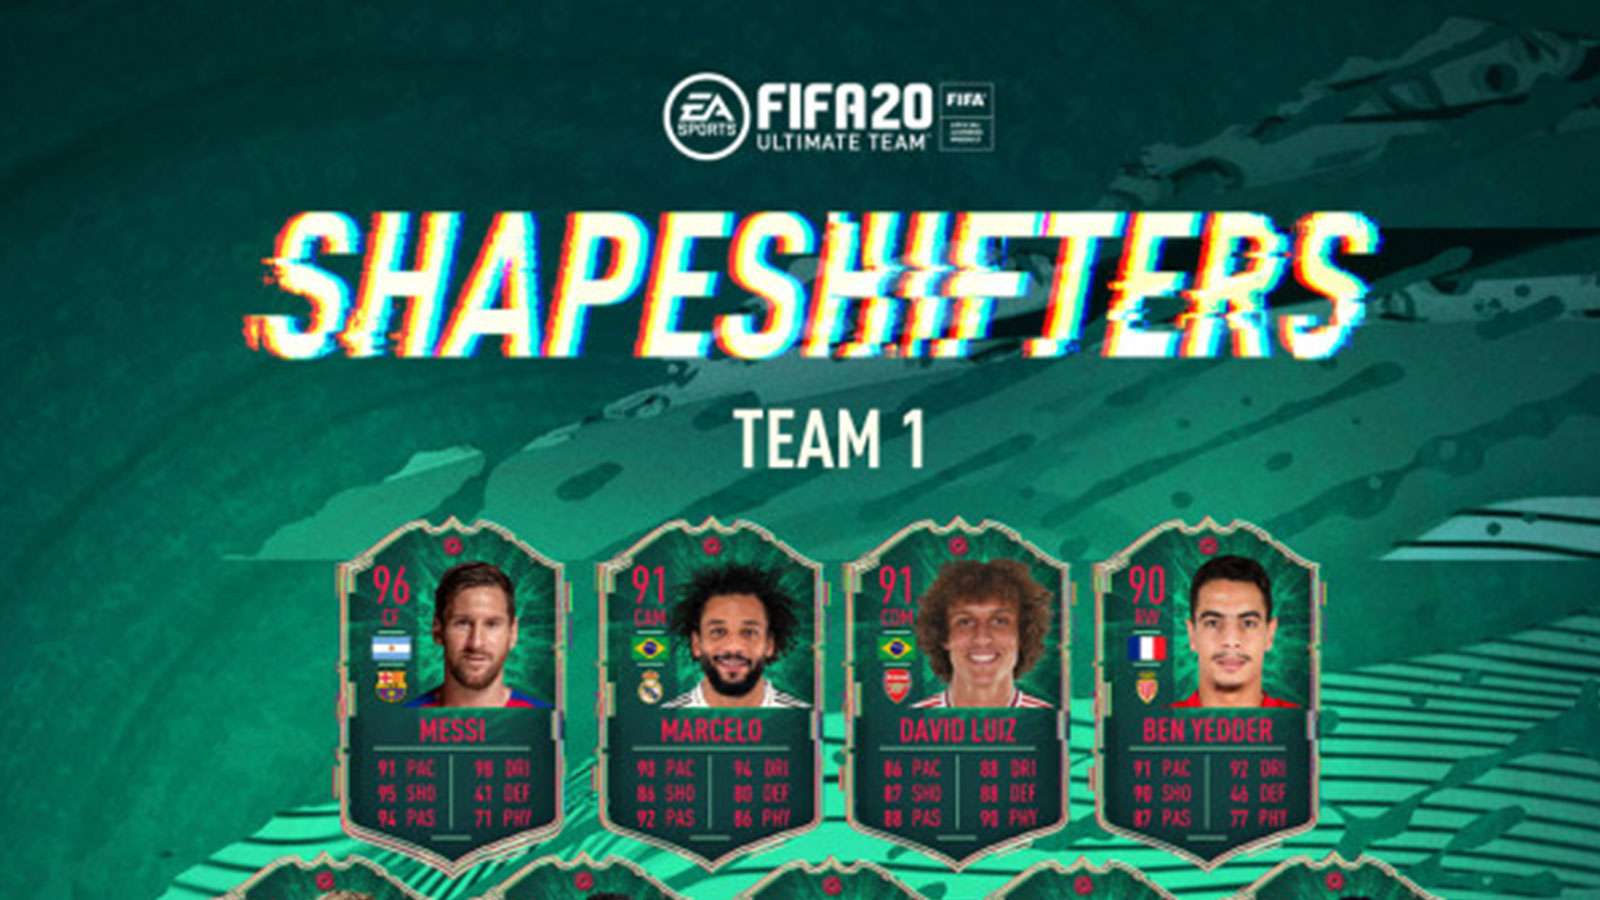 Les ShapeShifters ont fait leur apparition dans le mode FUT de FIFA 20